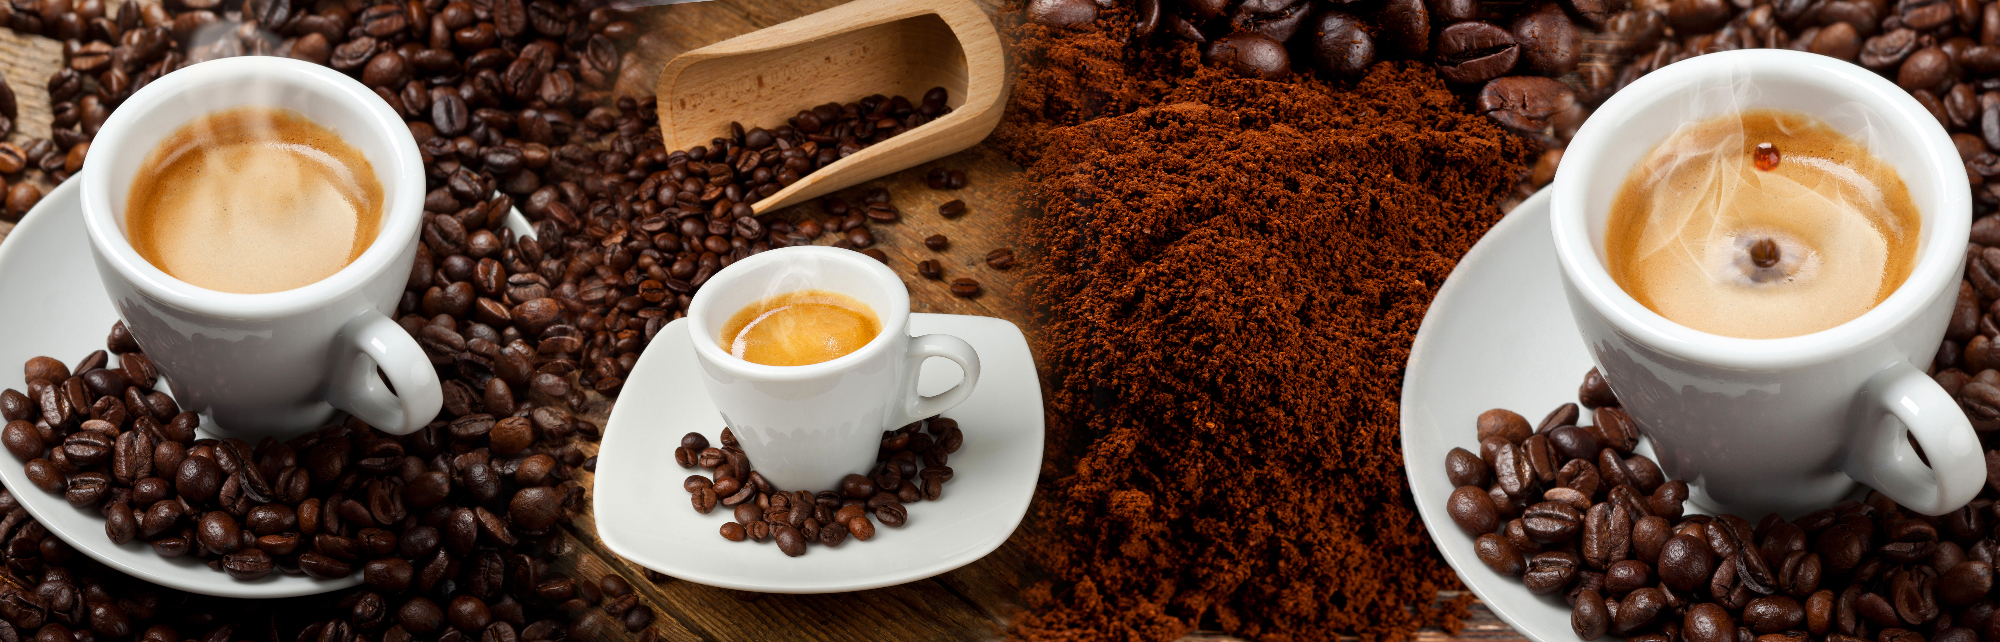 Kava je zelo priljubljen in razširjen kofeinski napitek